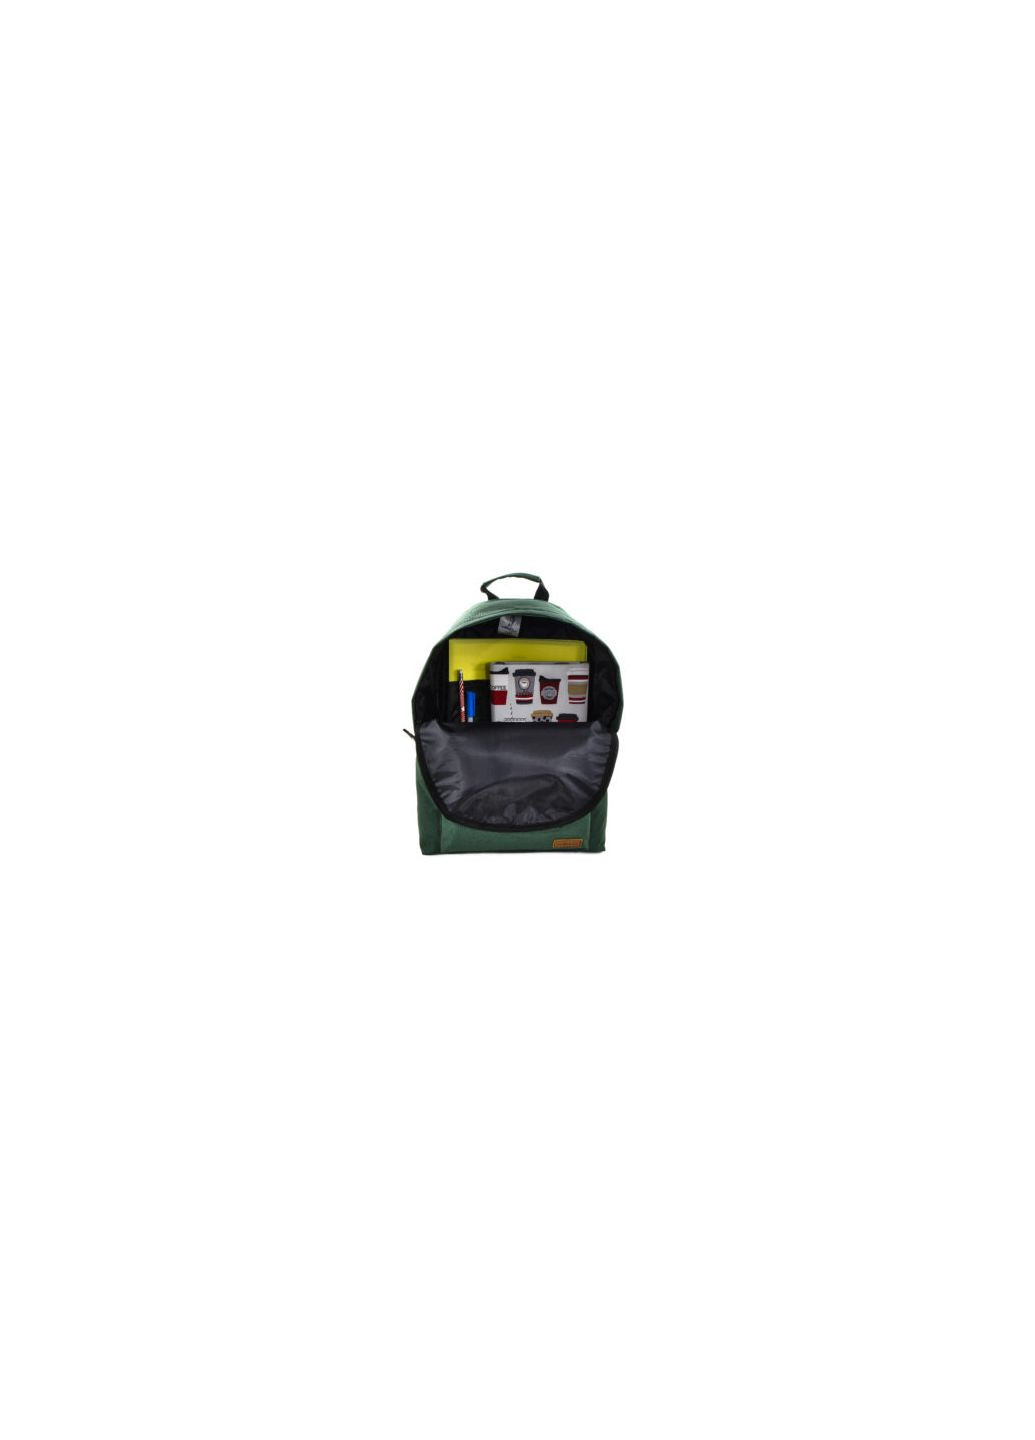 Городской рюкзак модель: City цвет: зеленый Surikat (266913406)